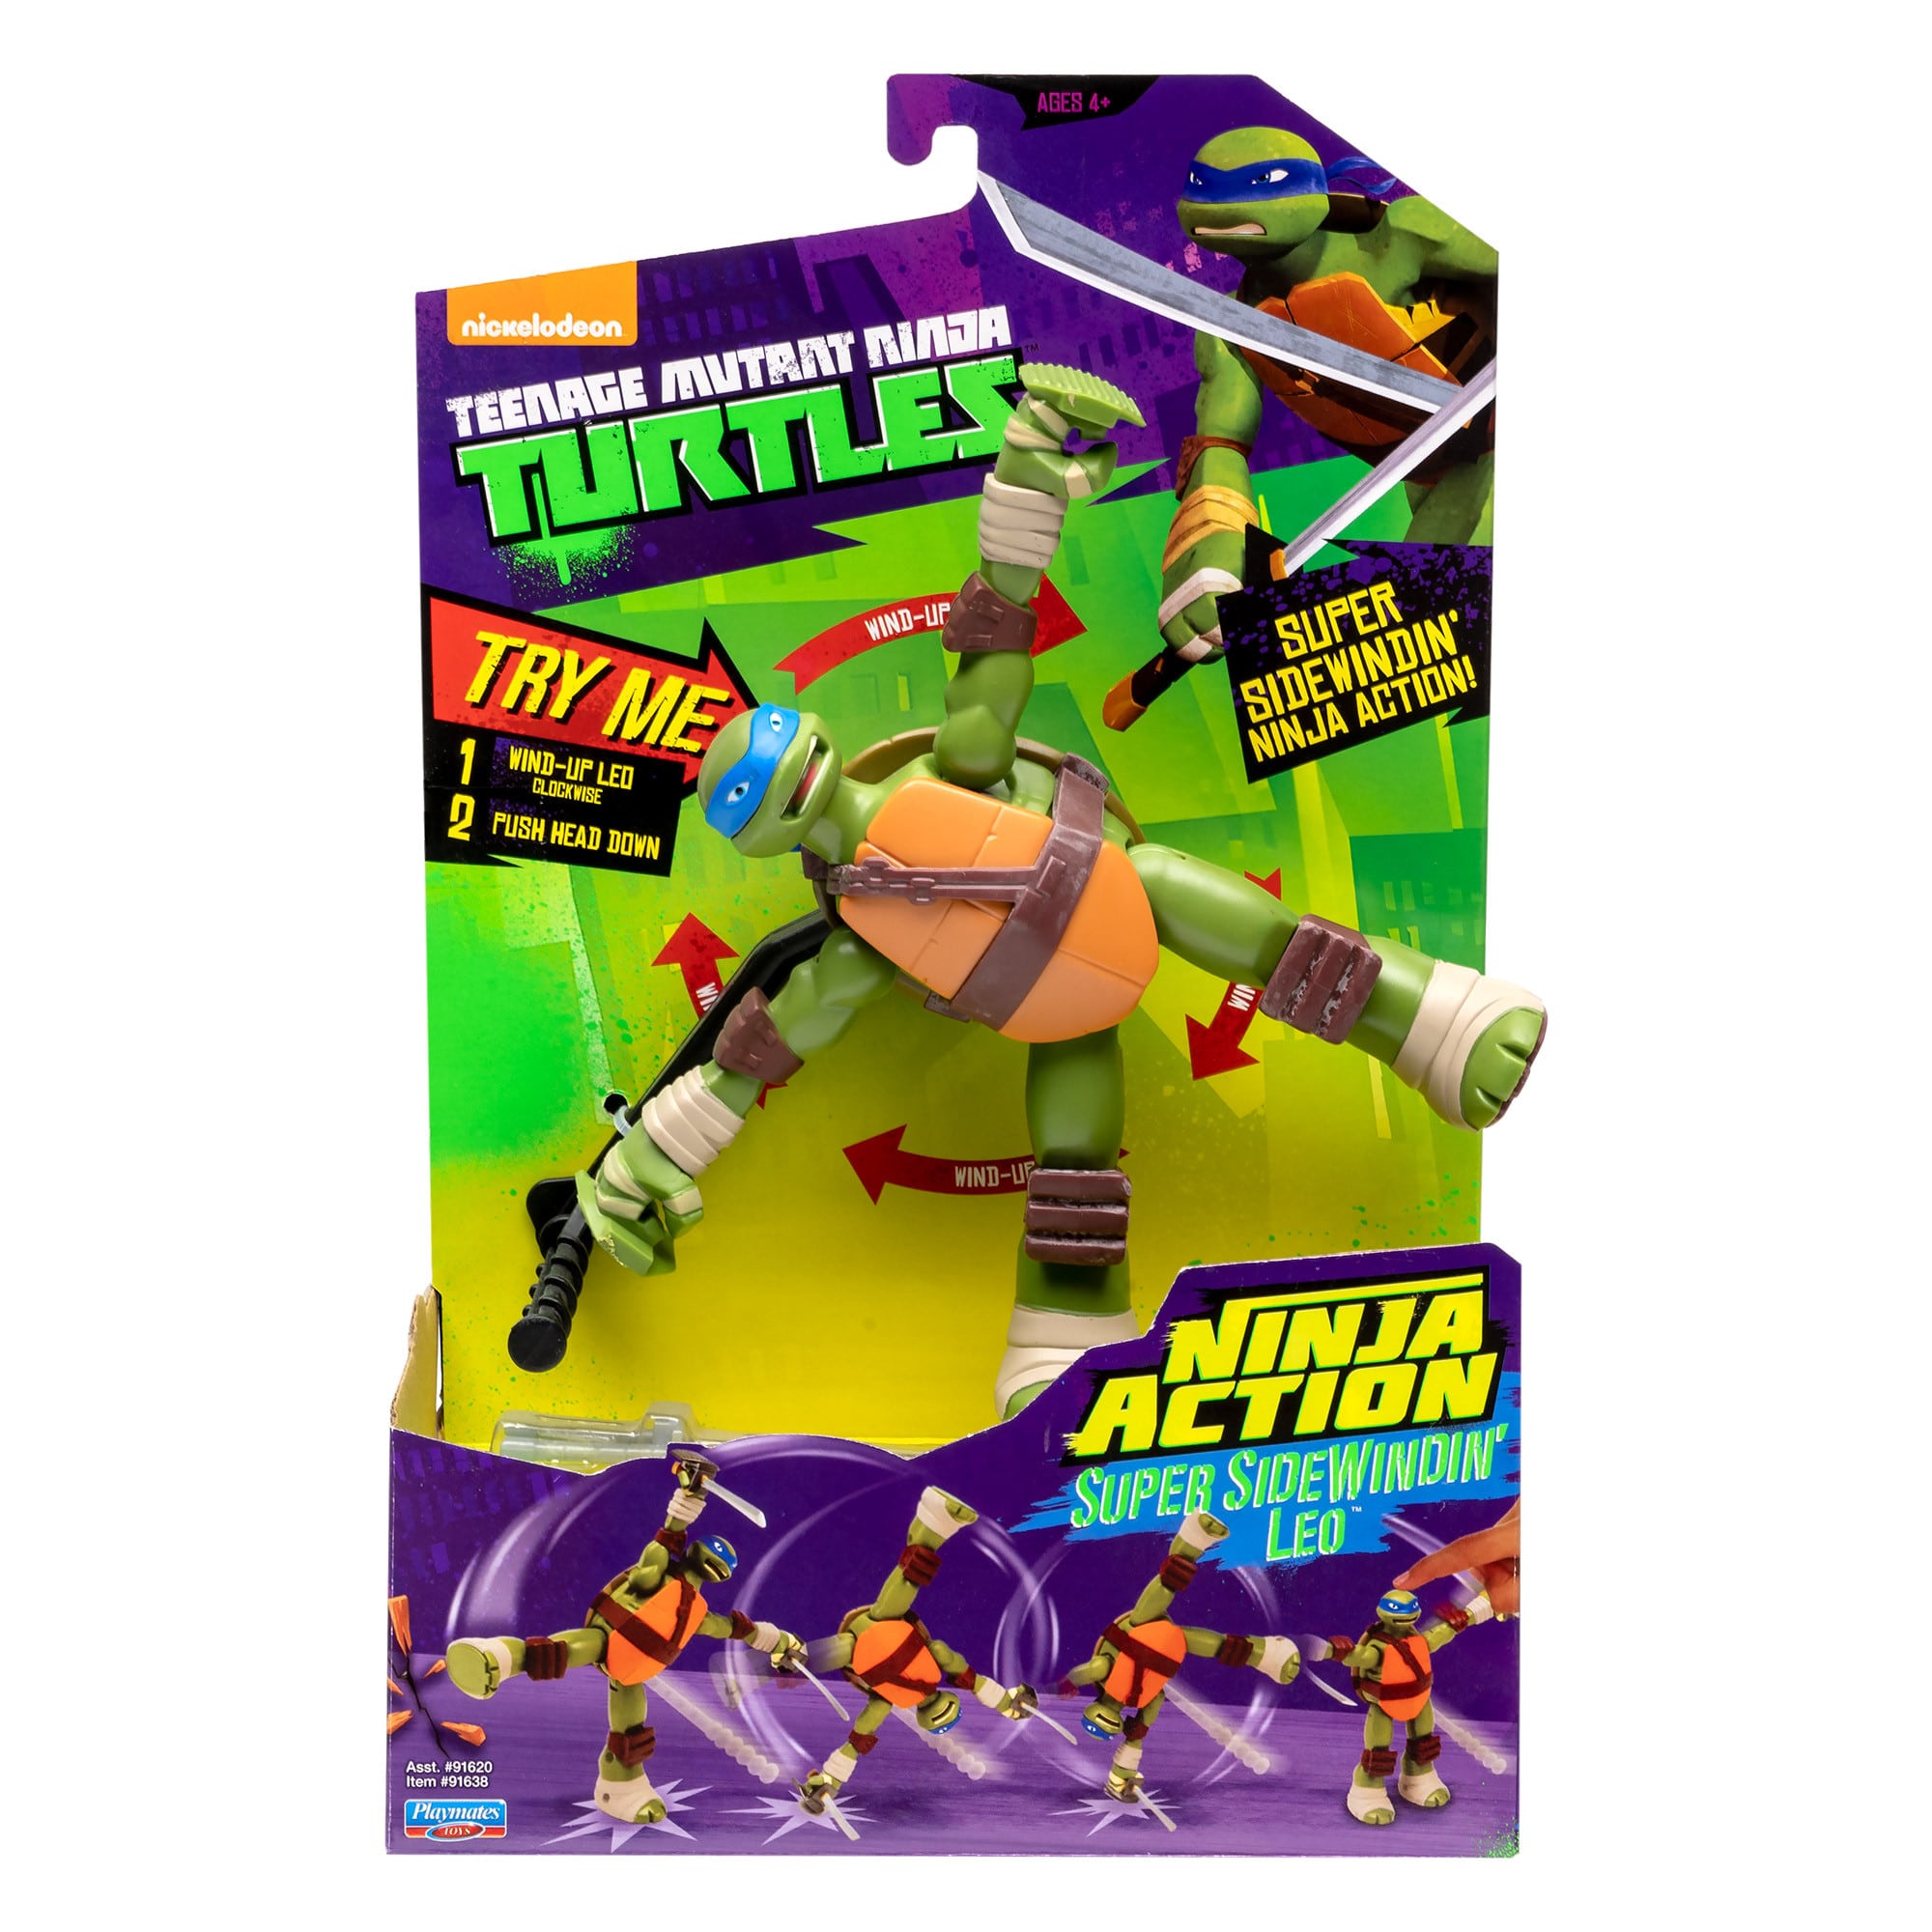 Teenage Mutant Ninja Turtles - Ninja Action - Super Sidewindin' Leo